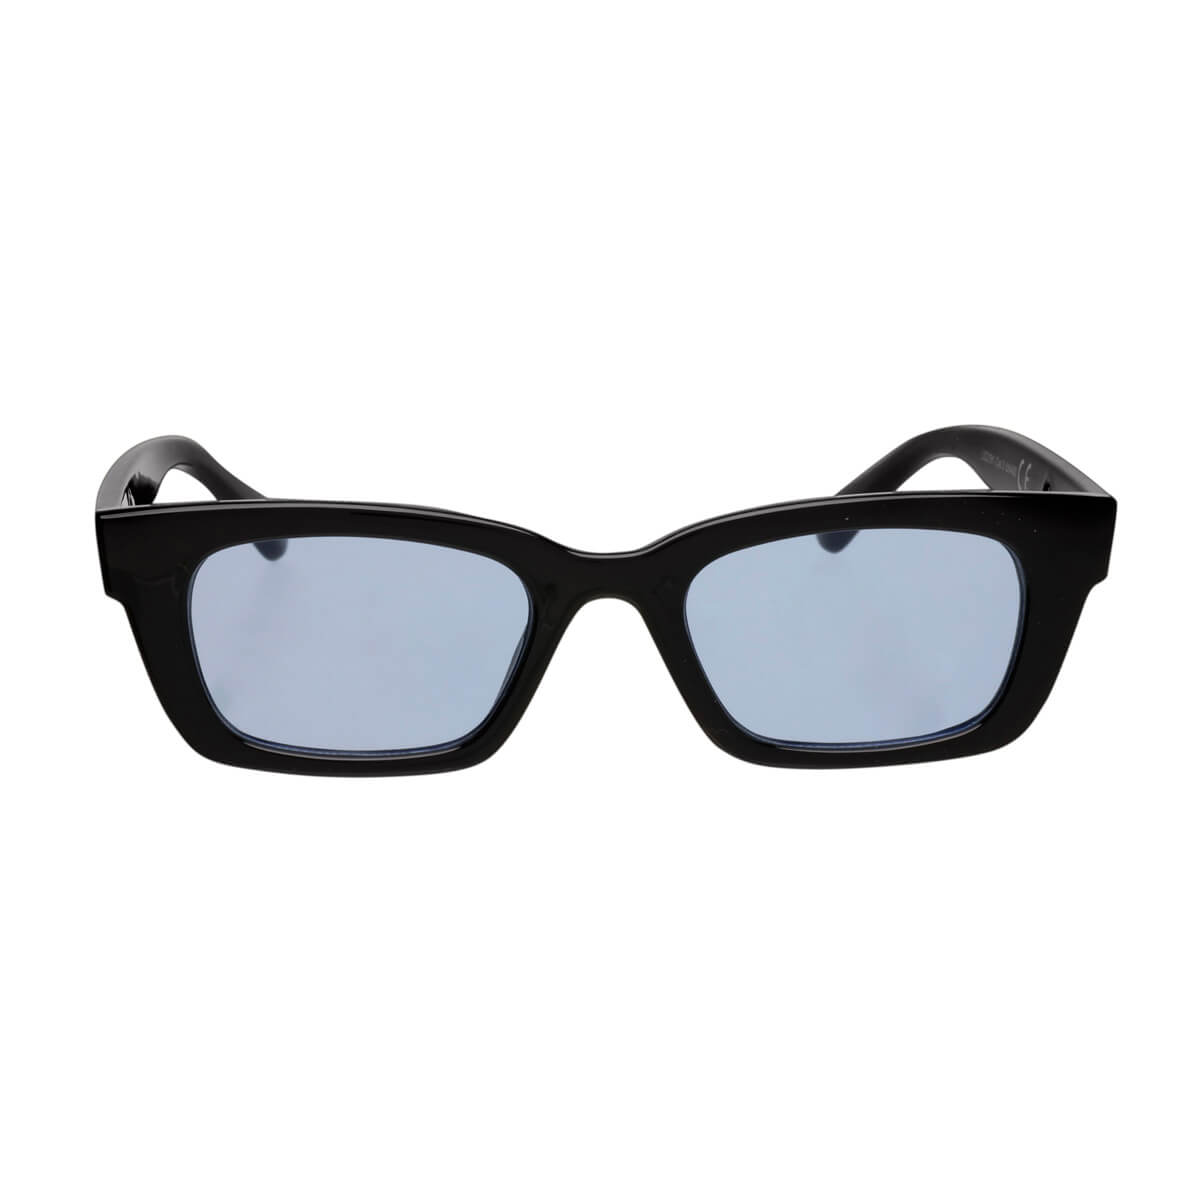 Low rectangular sunglasses